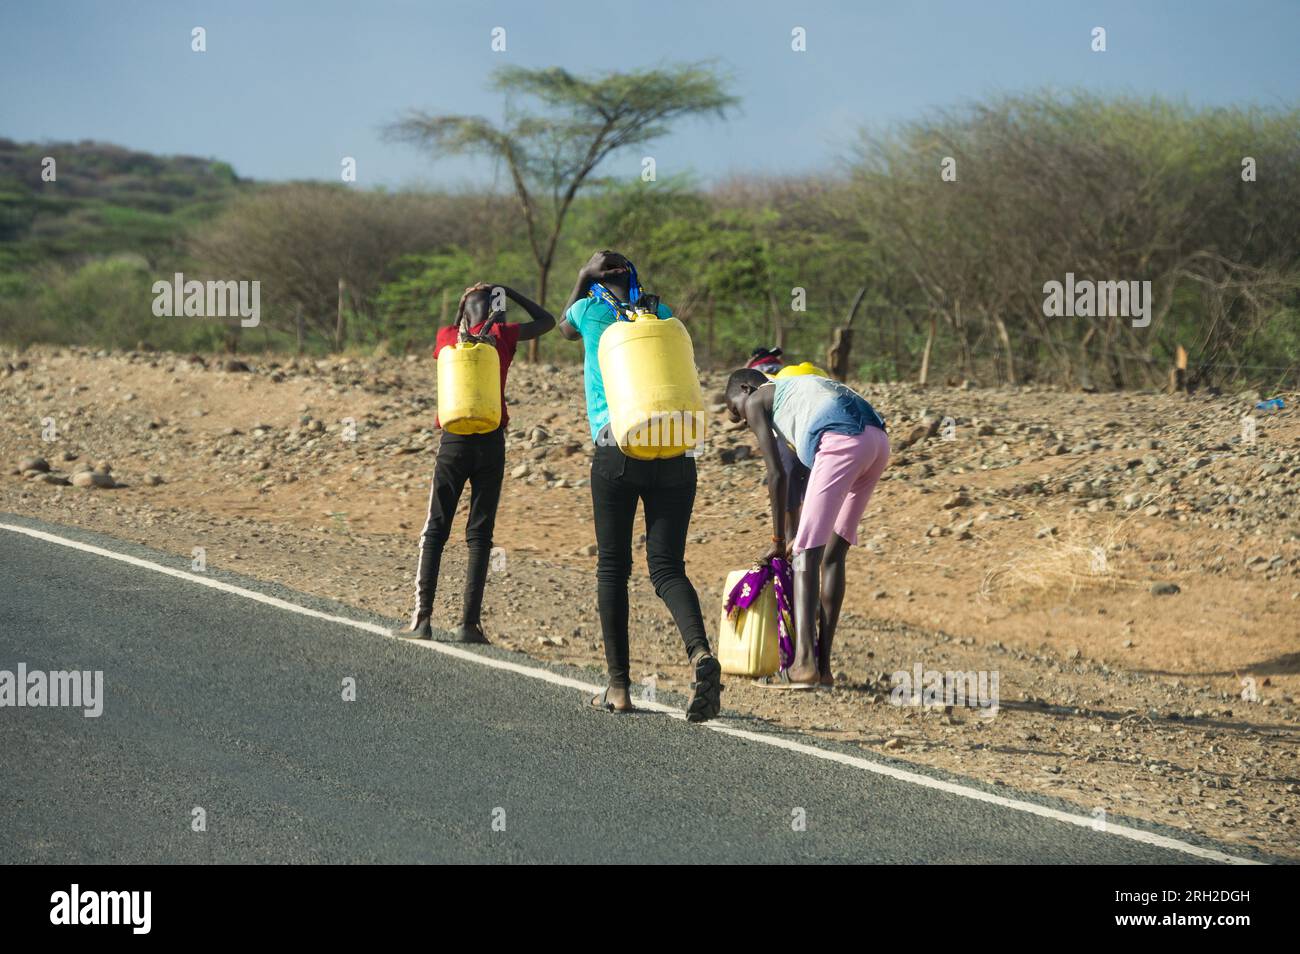 Un groupe d'enfants transportant de grands conteneurs d'eau jaunes au bord de la route, Kenya Banque D'Images